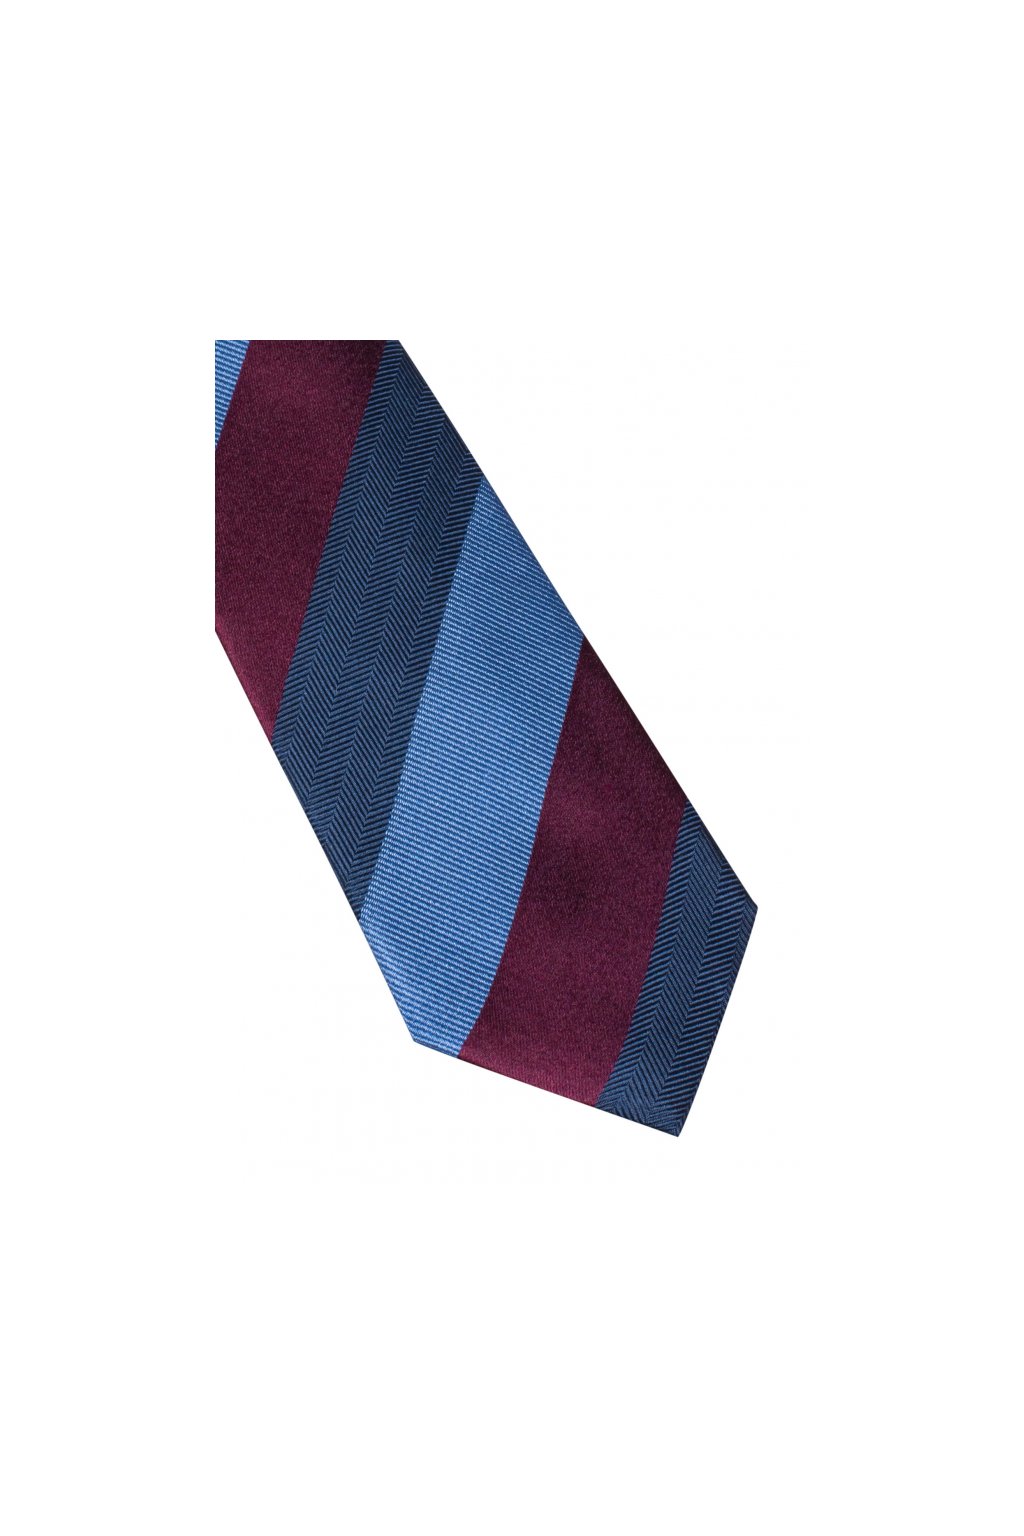 Úzká hedvábná kravata Eterna - pruhovaná navy / bordó